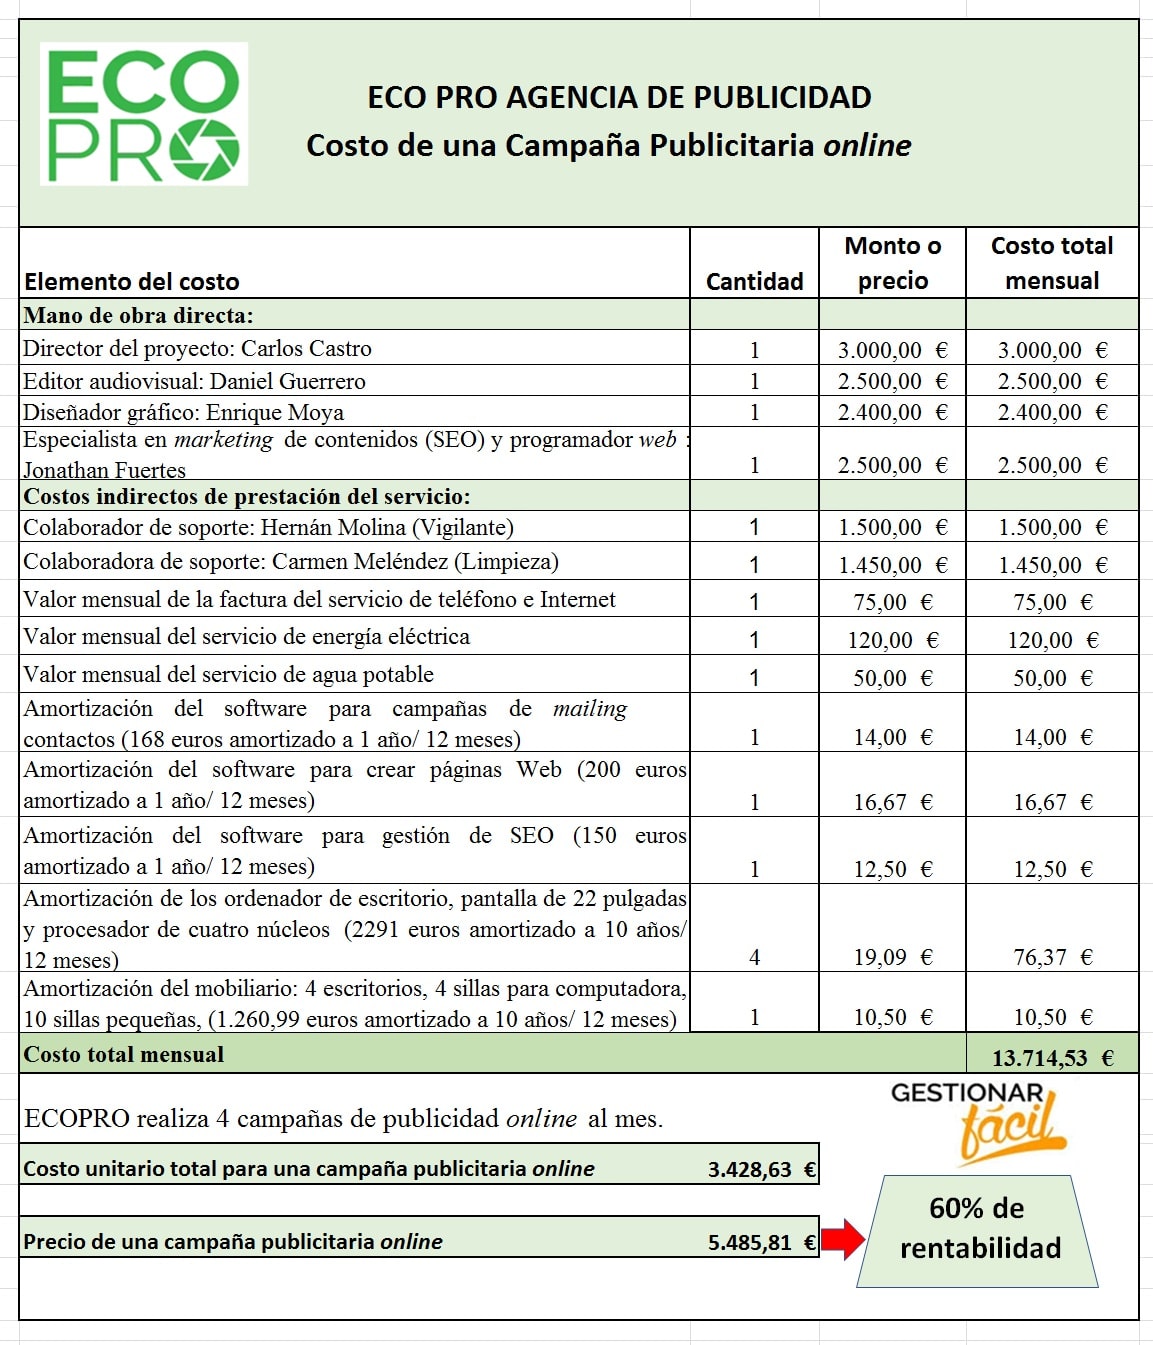 Estructura de costos para las campañas publicitarias online de la empresa ECOPRO.